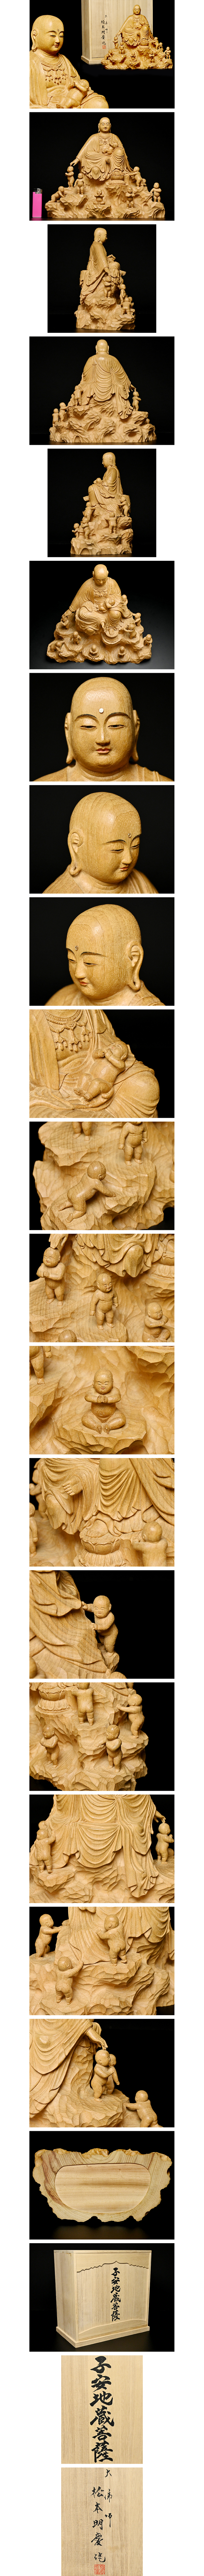 特価最新品仏教美術 仏像 木彫 京仏師 仏像